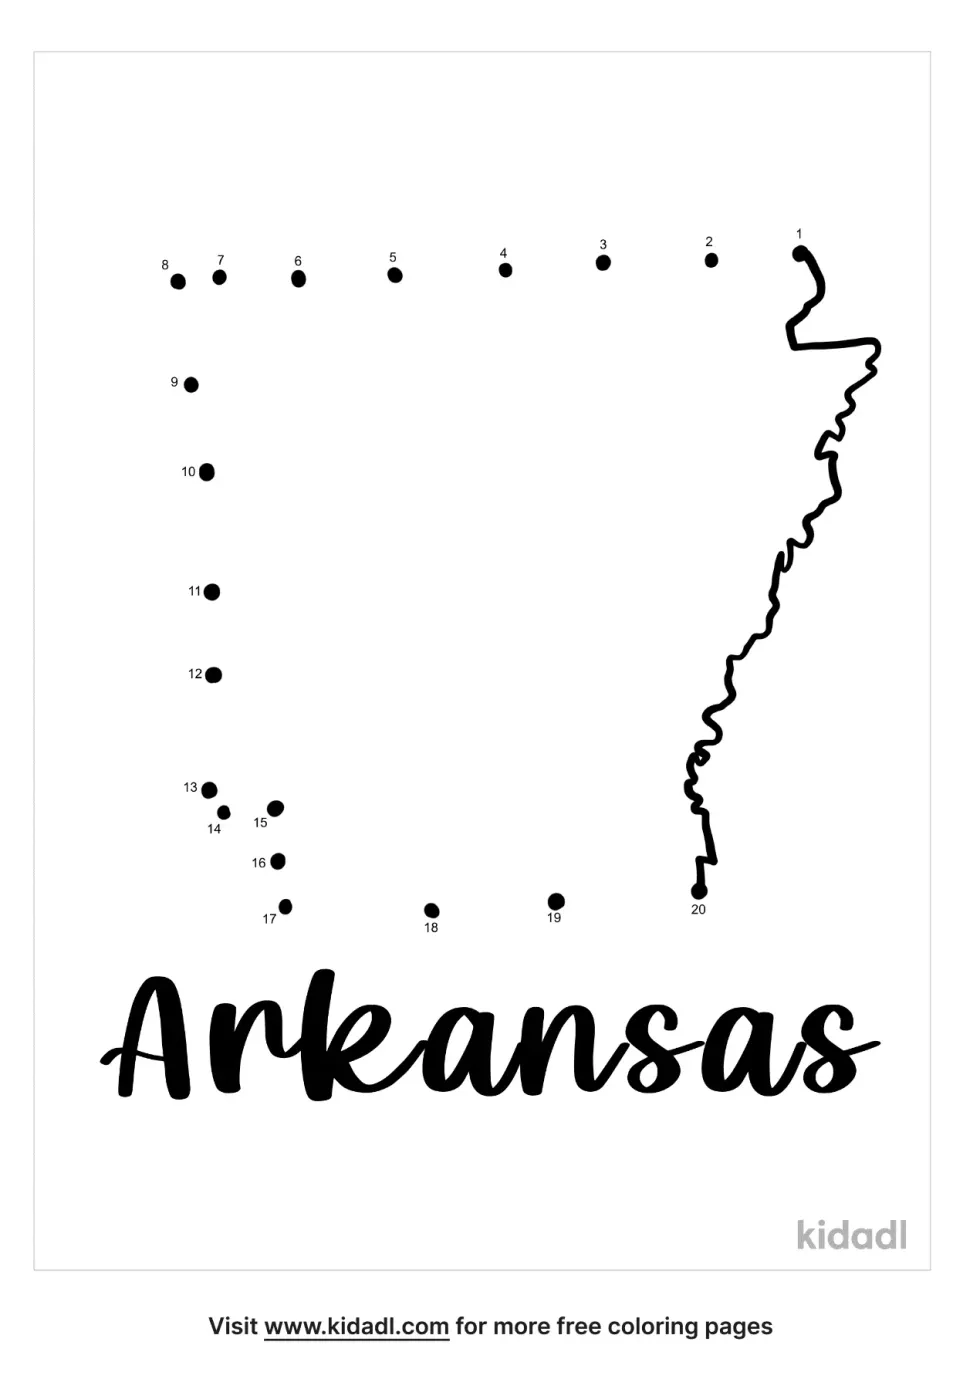 Arkansas Dot To Dot (Easy)